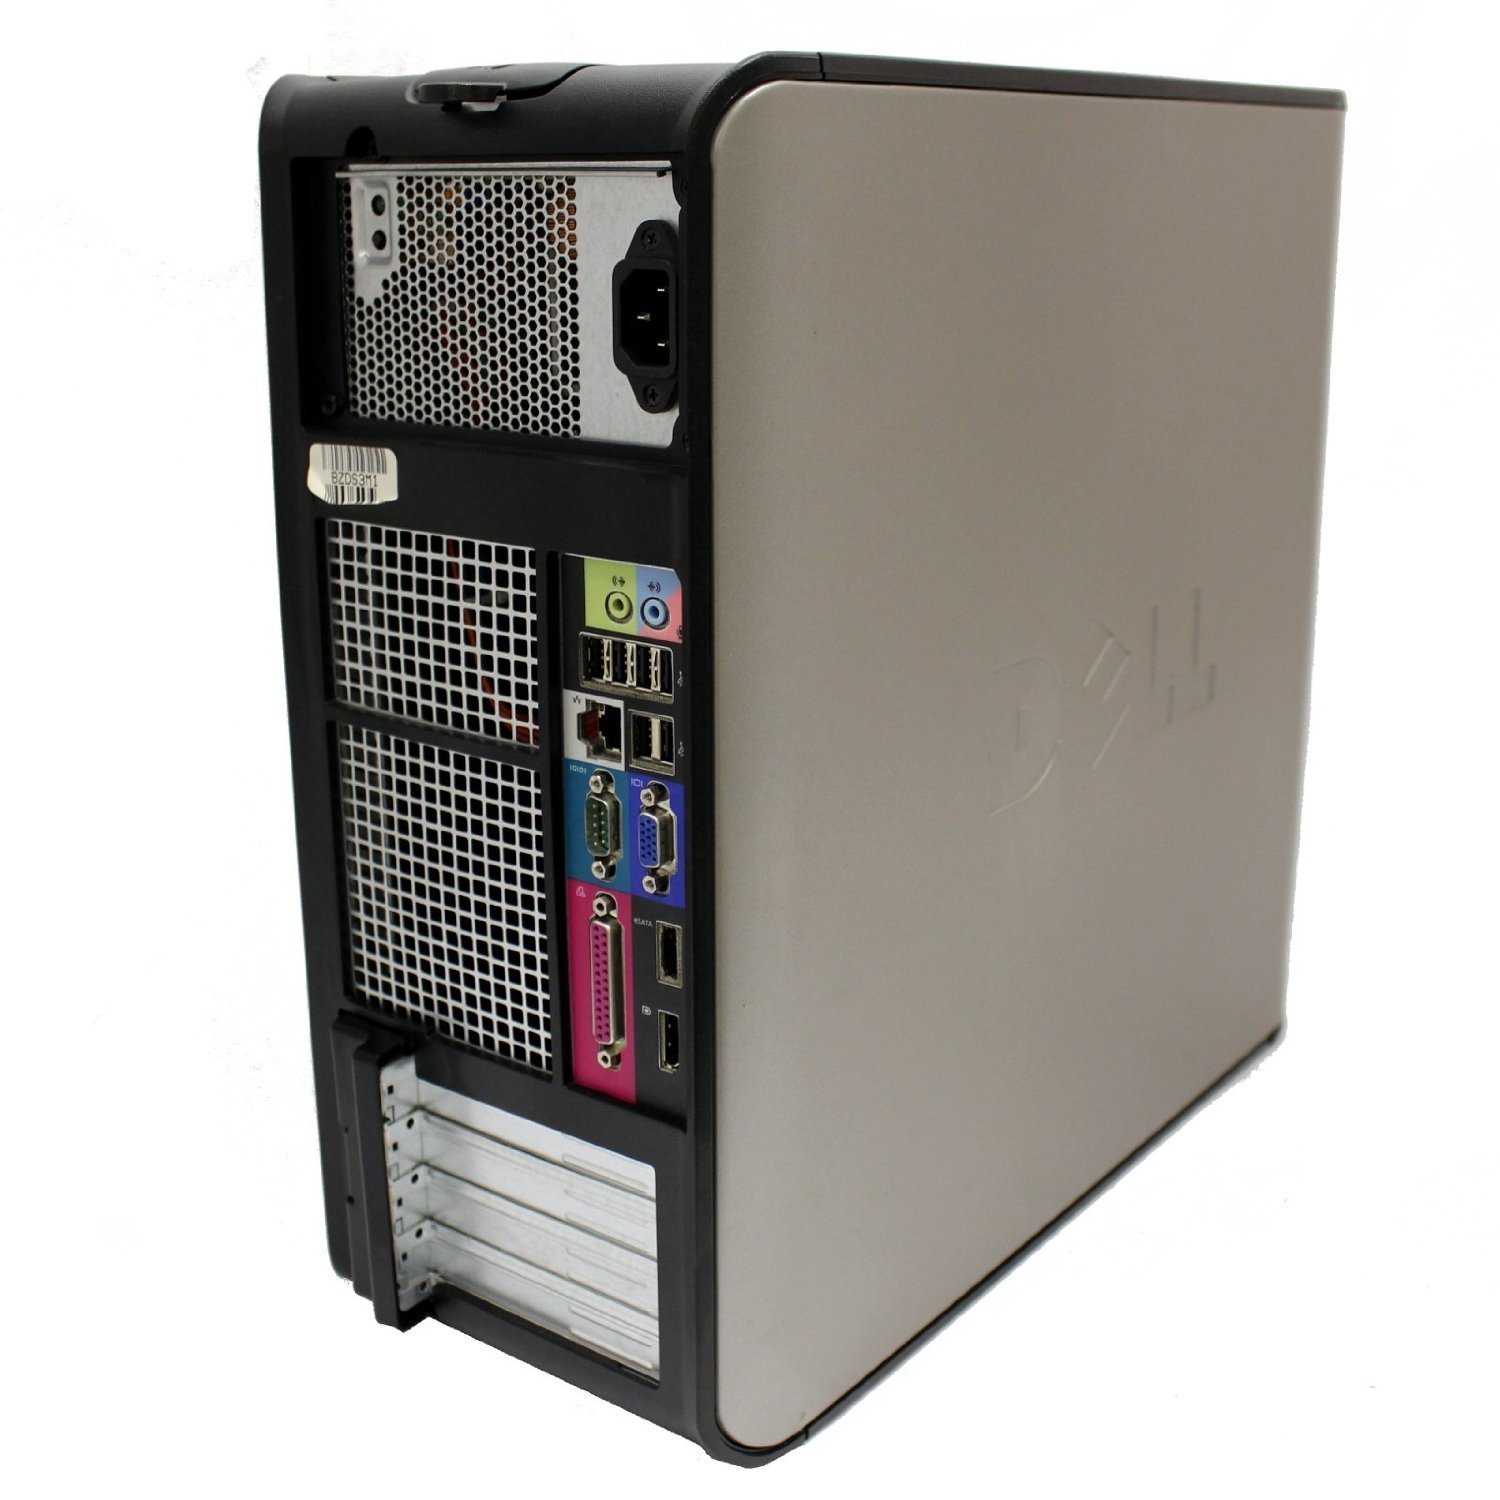 Dell Optiplex 780 Mini-Tower - Windows 10 Pro - 3.00GHz Intel Core 2 Duo E8400 – 4GB RAM - 160GB HDD